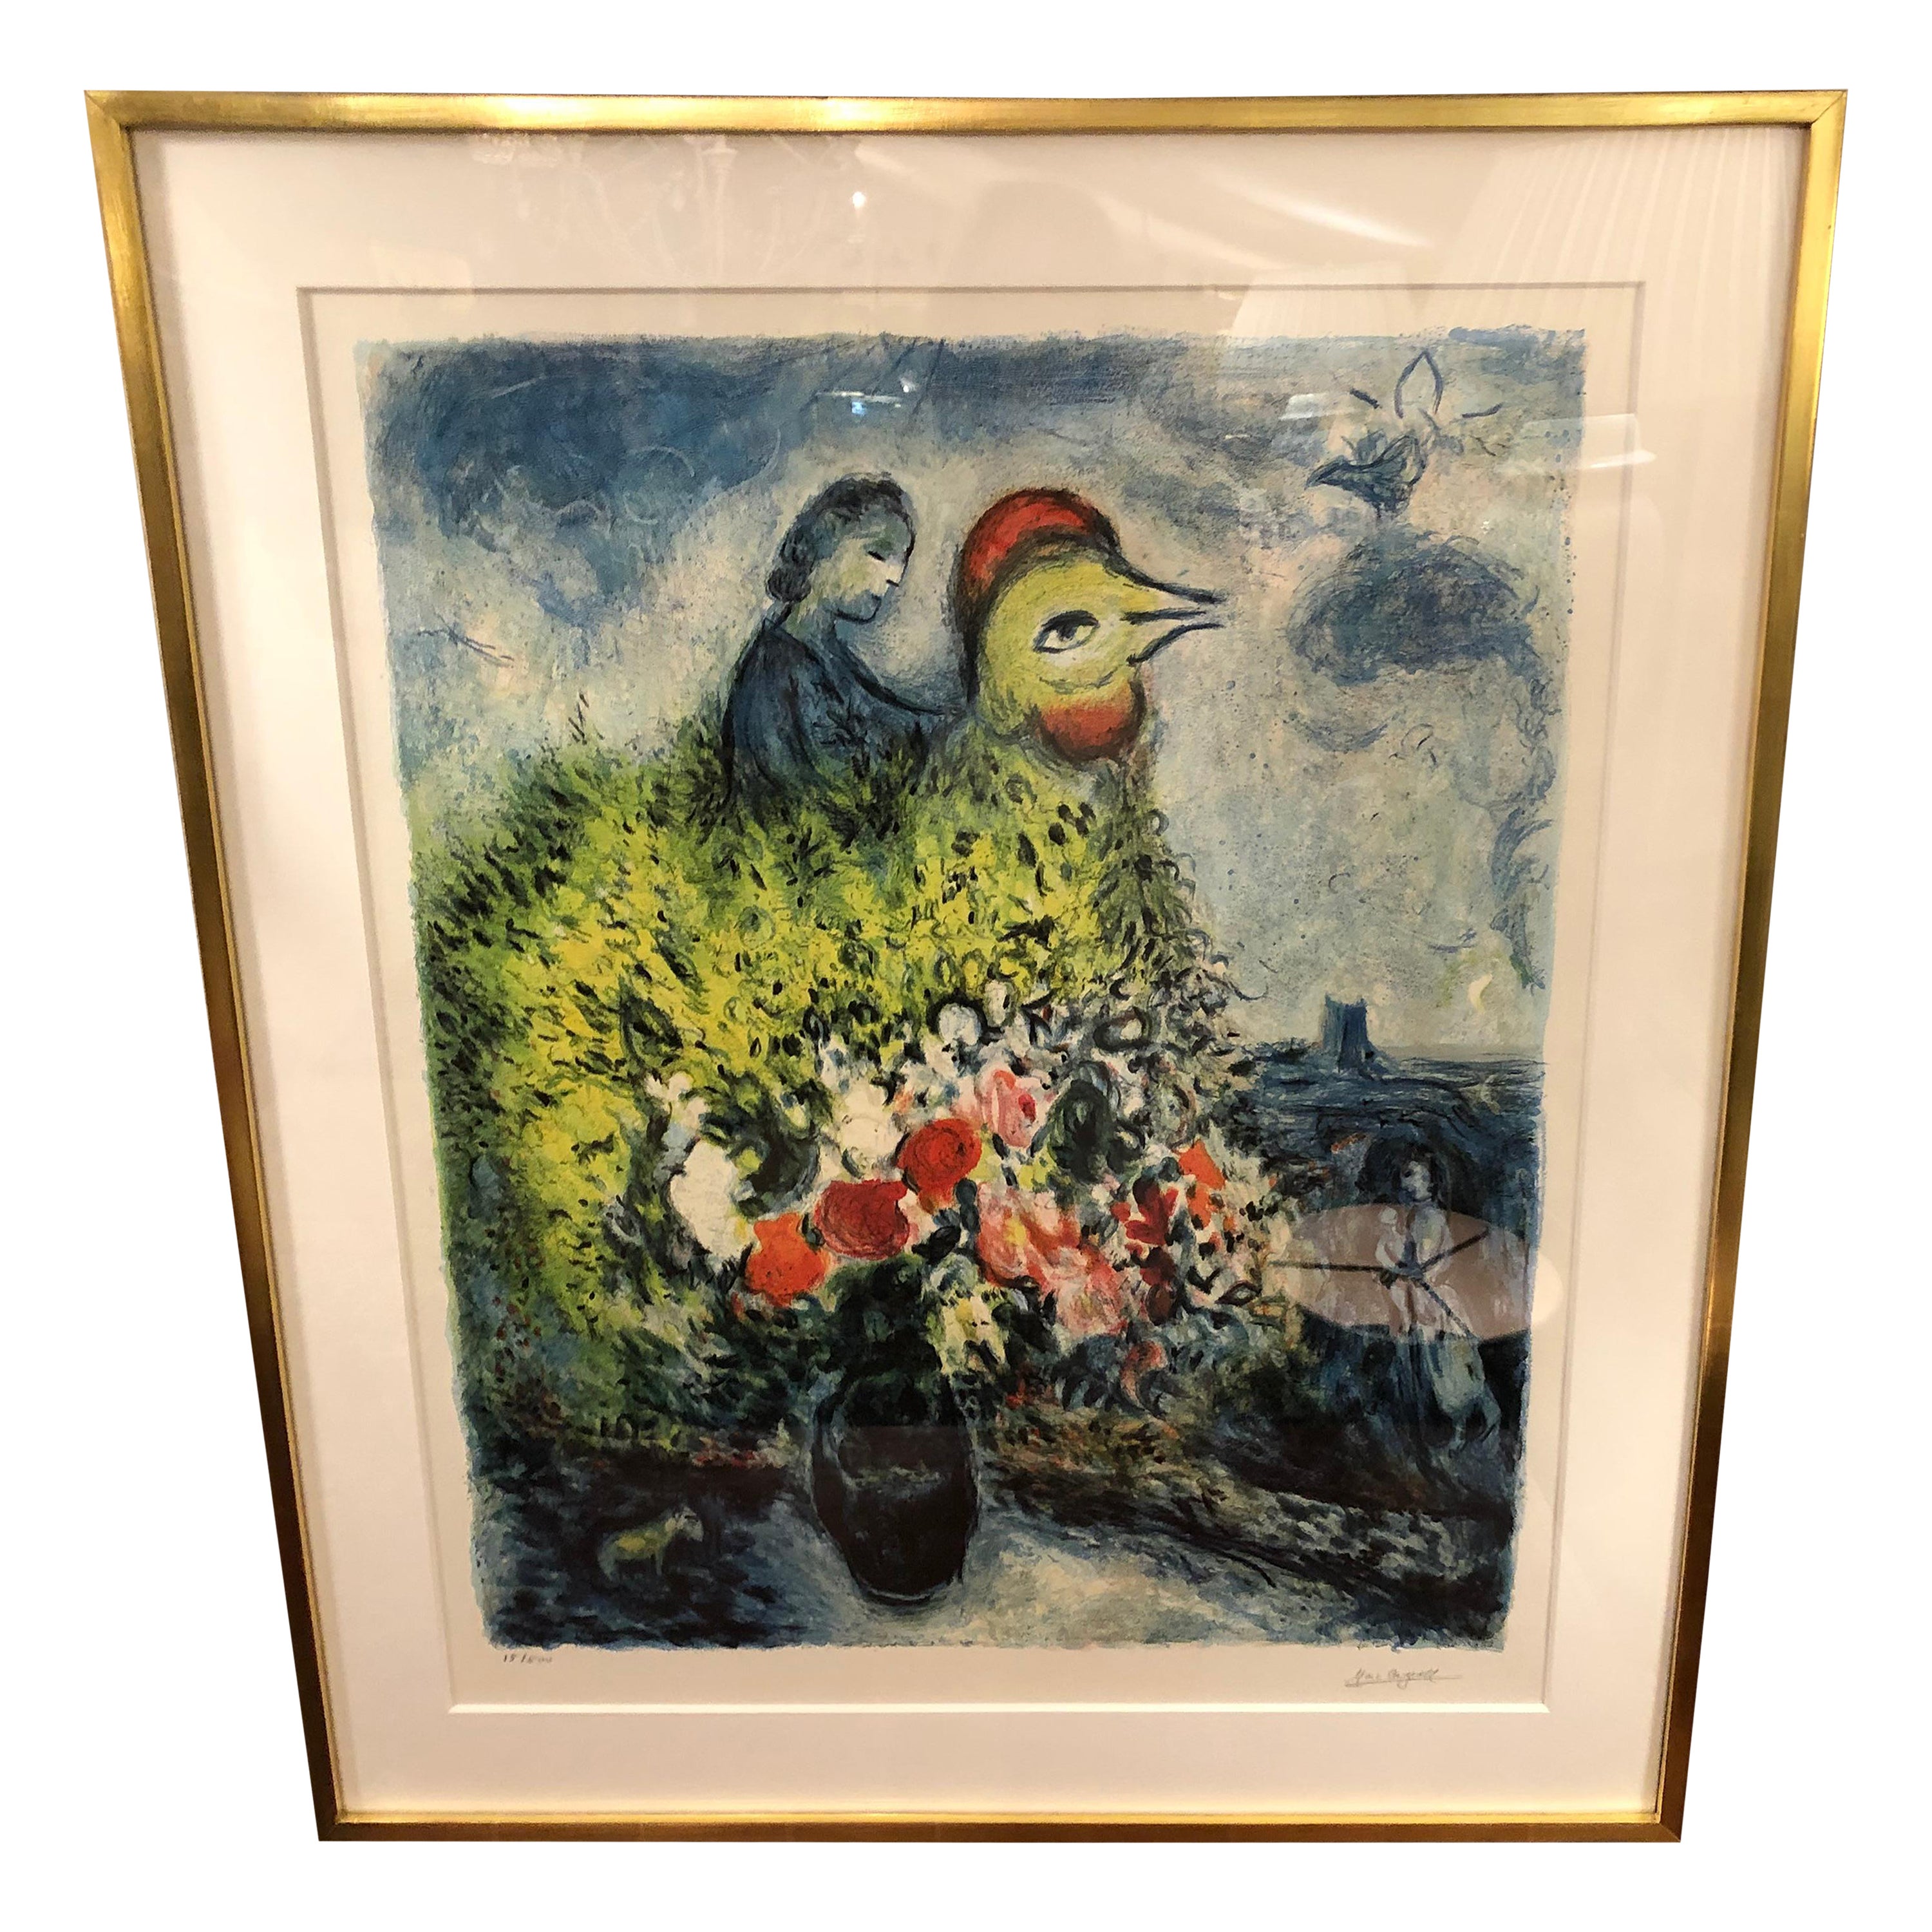  Impression Chagall Le Coq Avec Le Bouquet Jaune Signé et numéroté Édition limitée